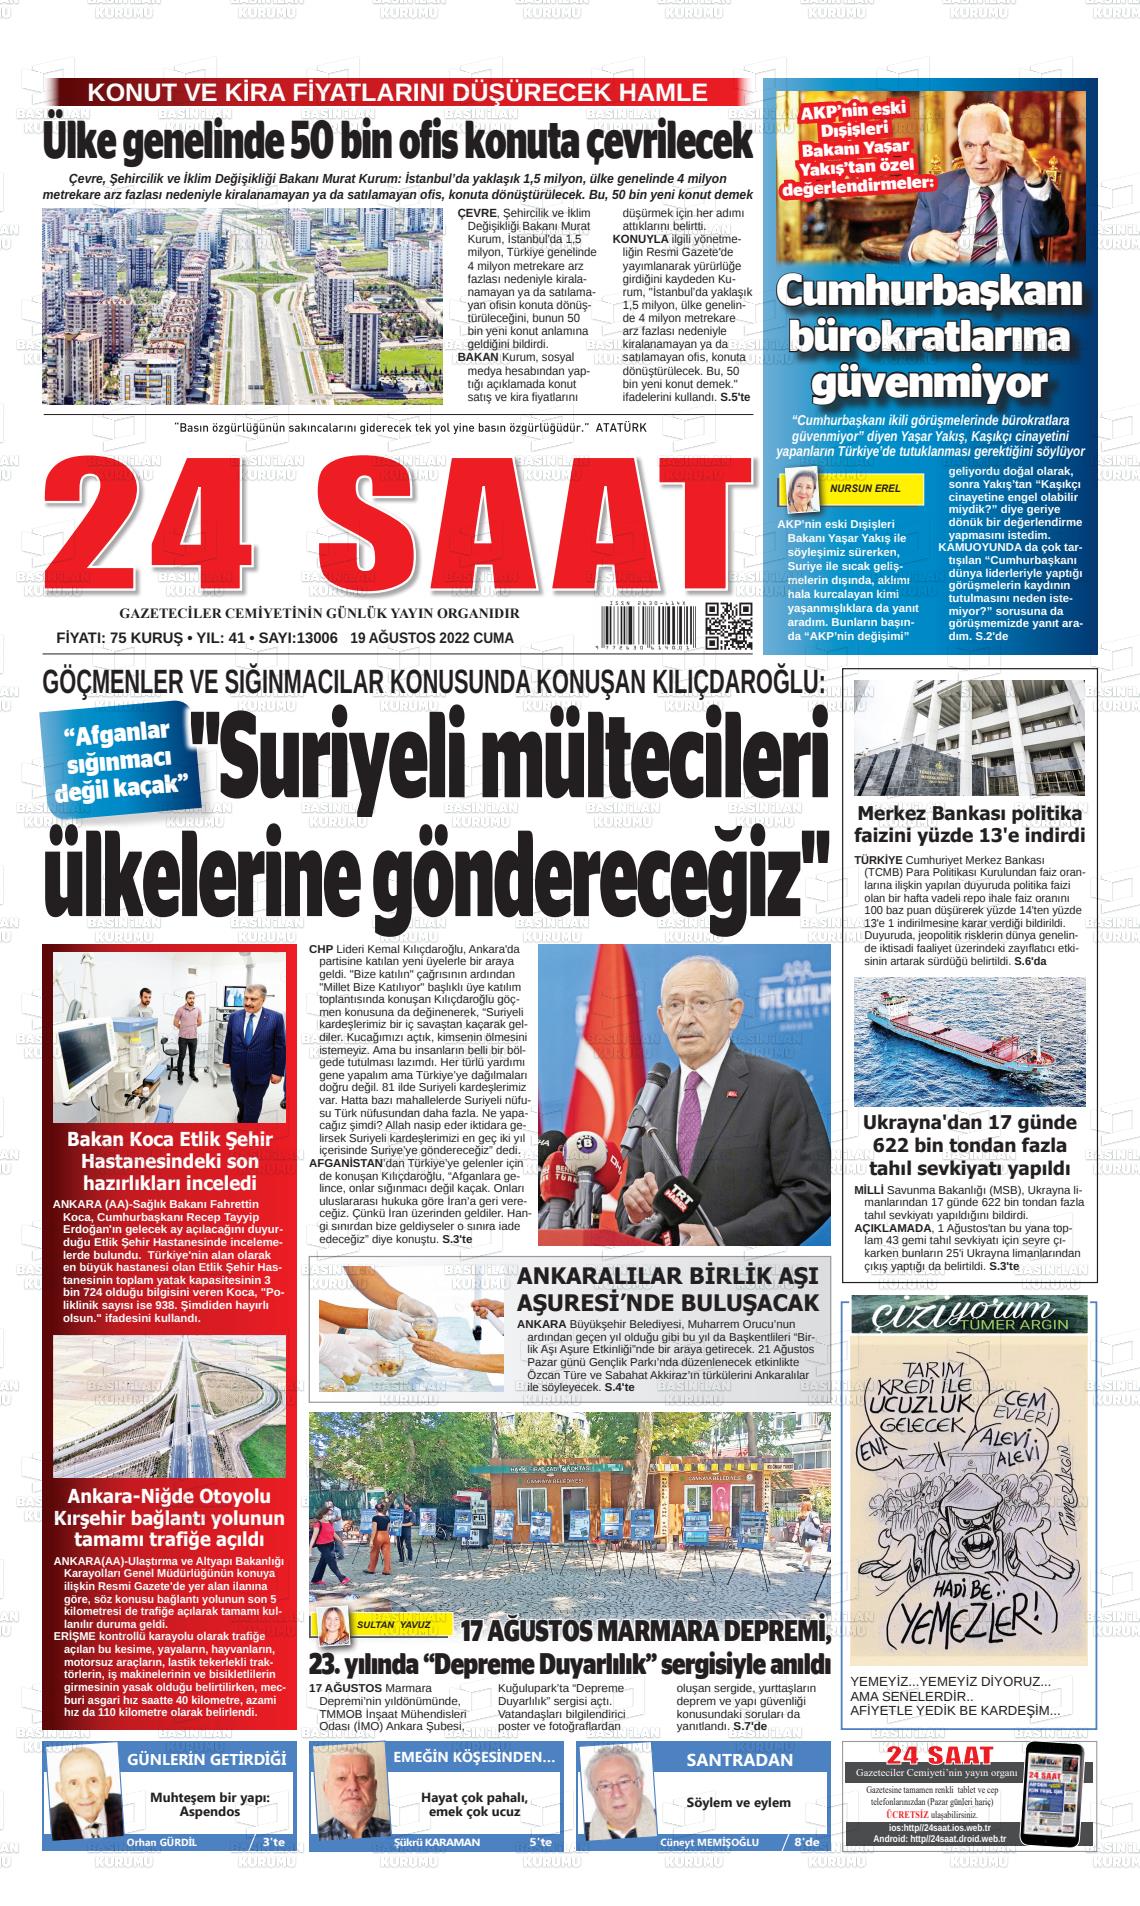 19 Ağustos 2022 24 Saat Gazete Manşeti